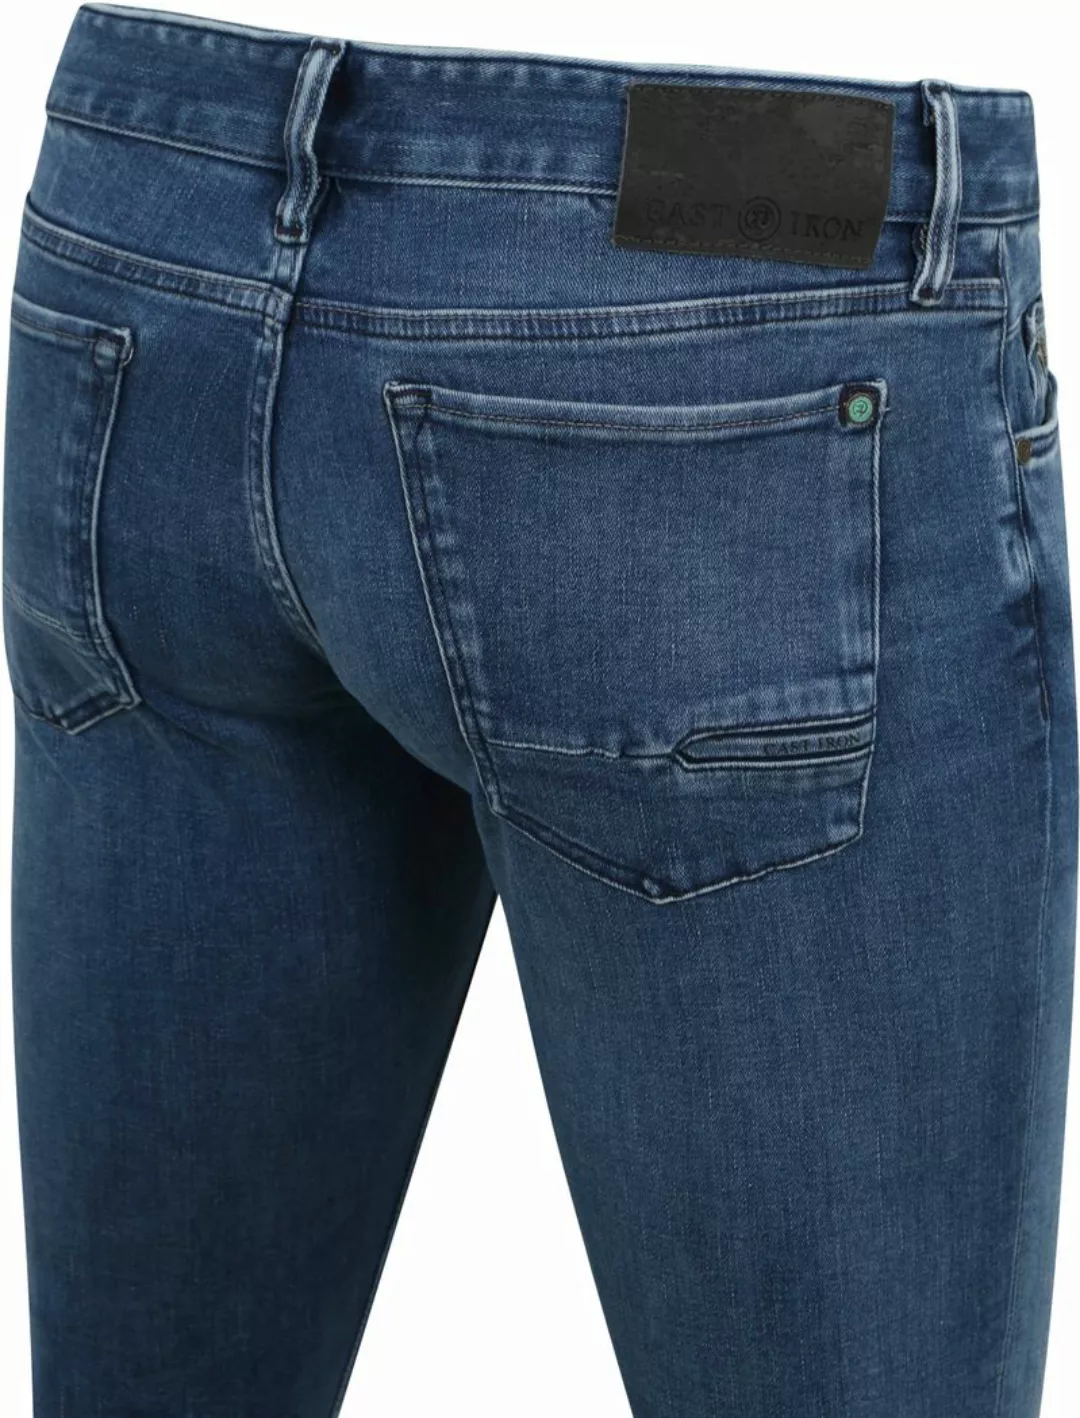 Cast Iron Riser Jeans Blau IIW - Größe W 31 - L 34 günstig online kaufen